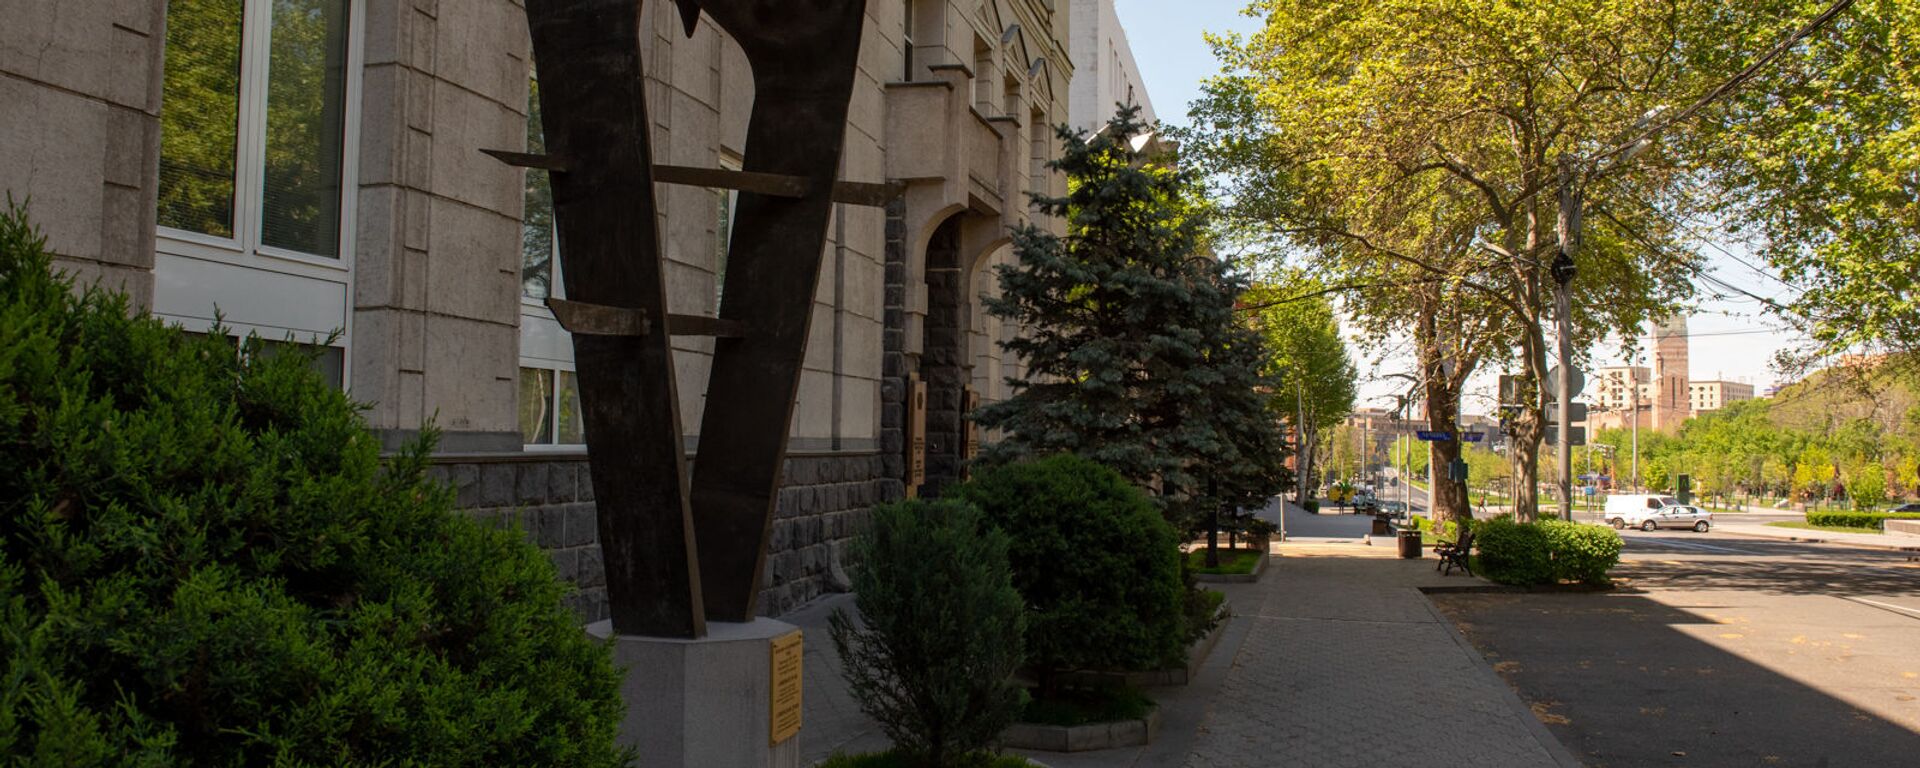 Скульптура армянскому драму перед зданием Центрального Банка Армении - Sputnik Армения, 1920, 02.02.2021